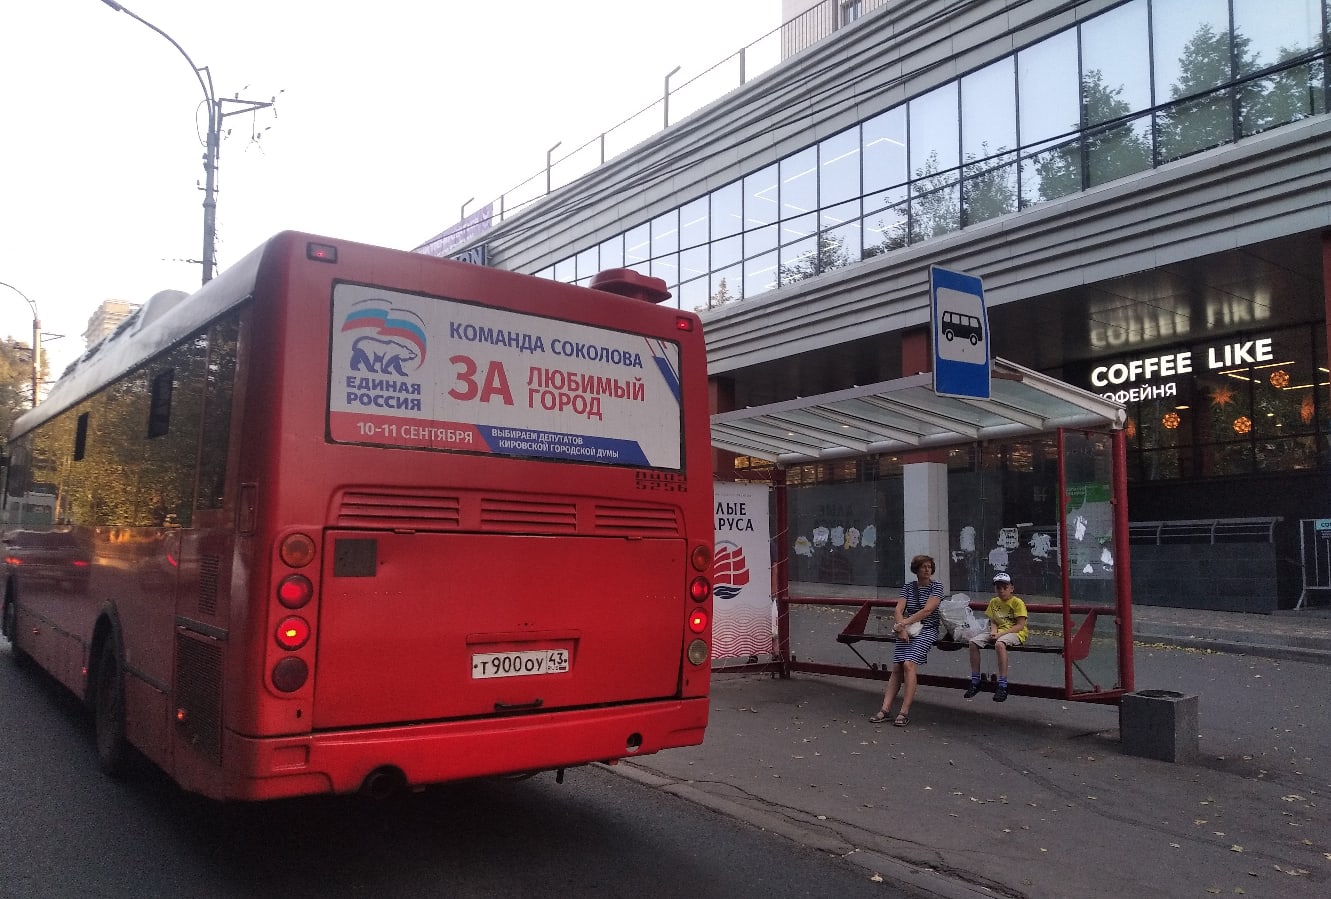 С 11 июня в Кирове появится новый автобусный маршрут